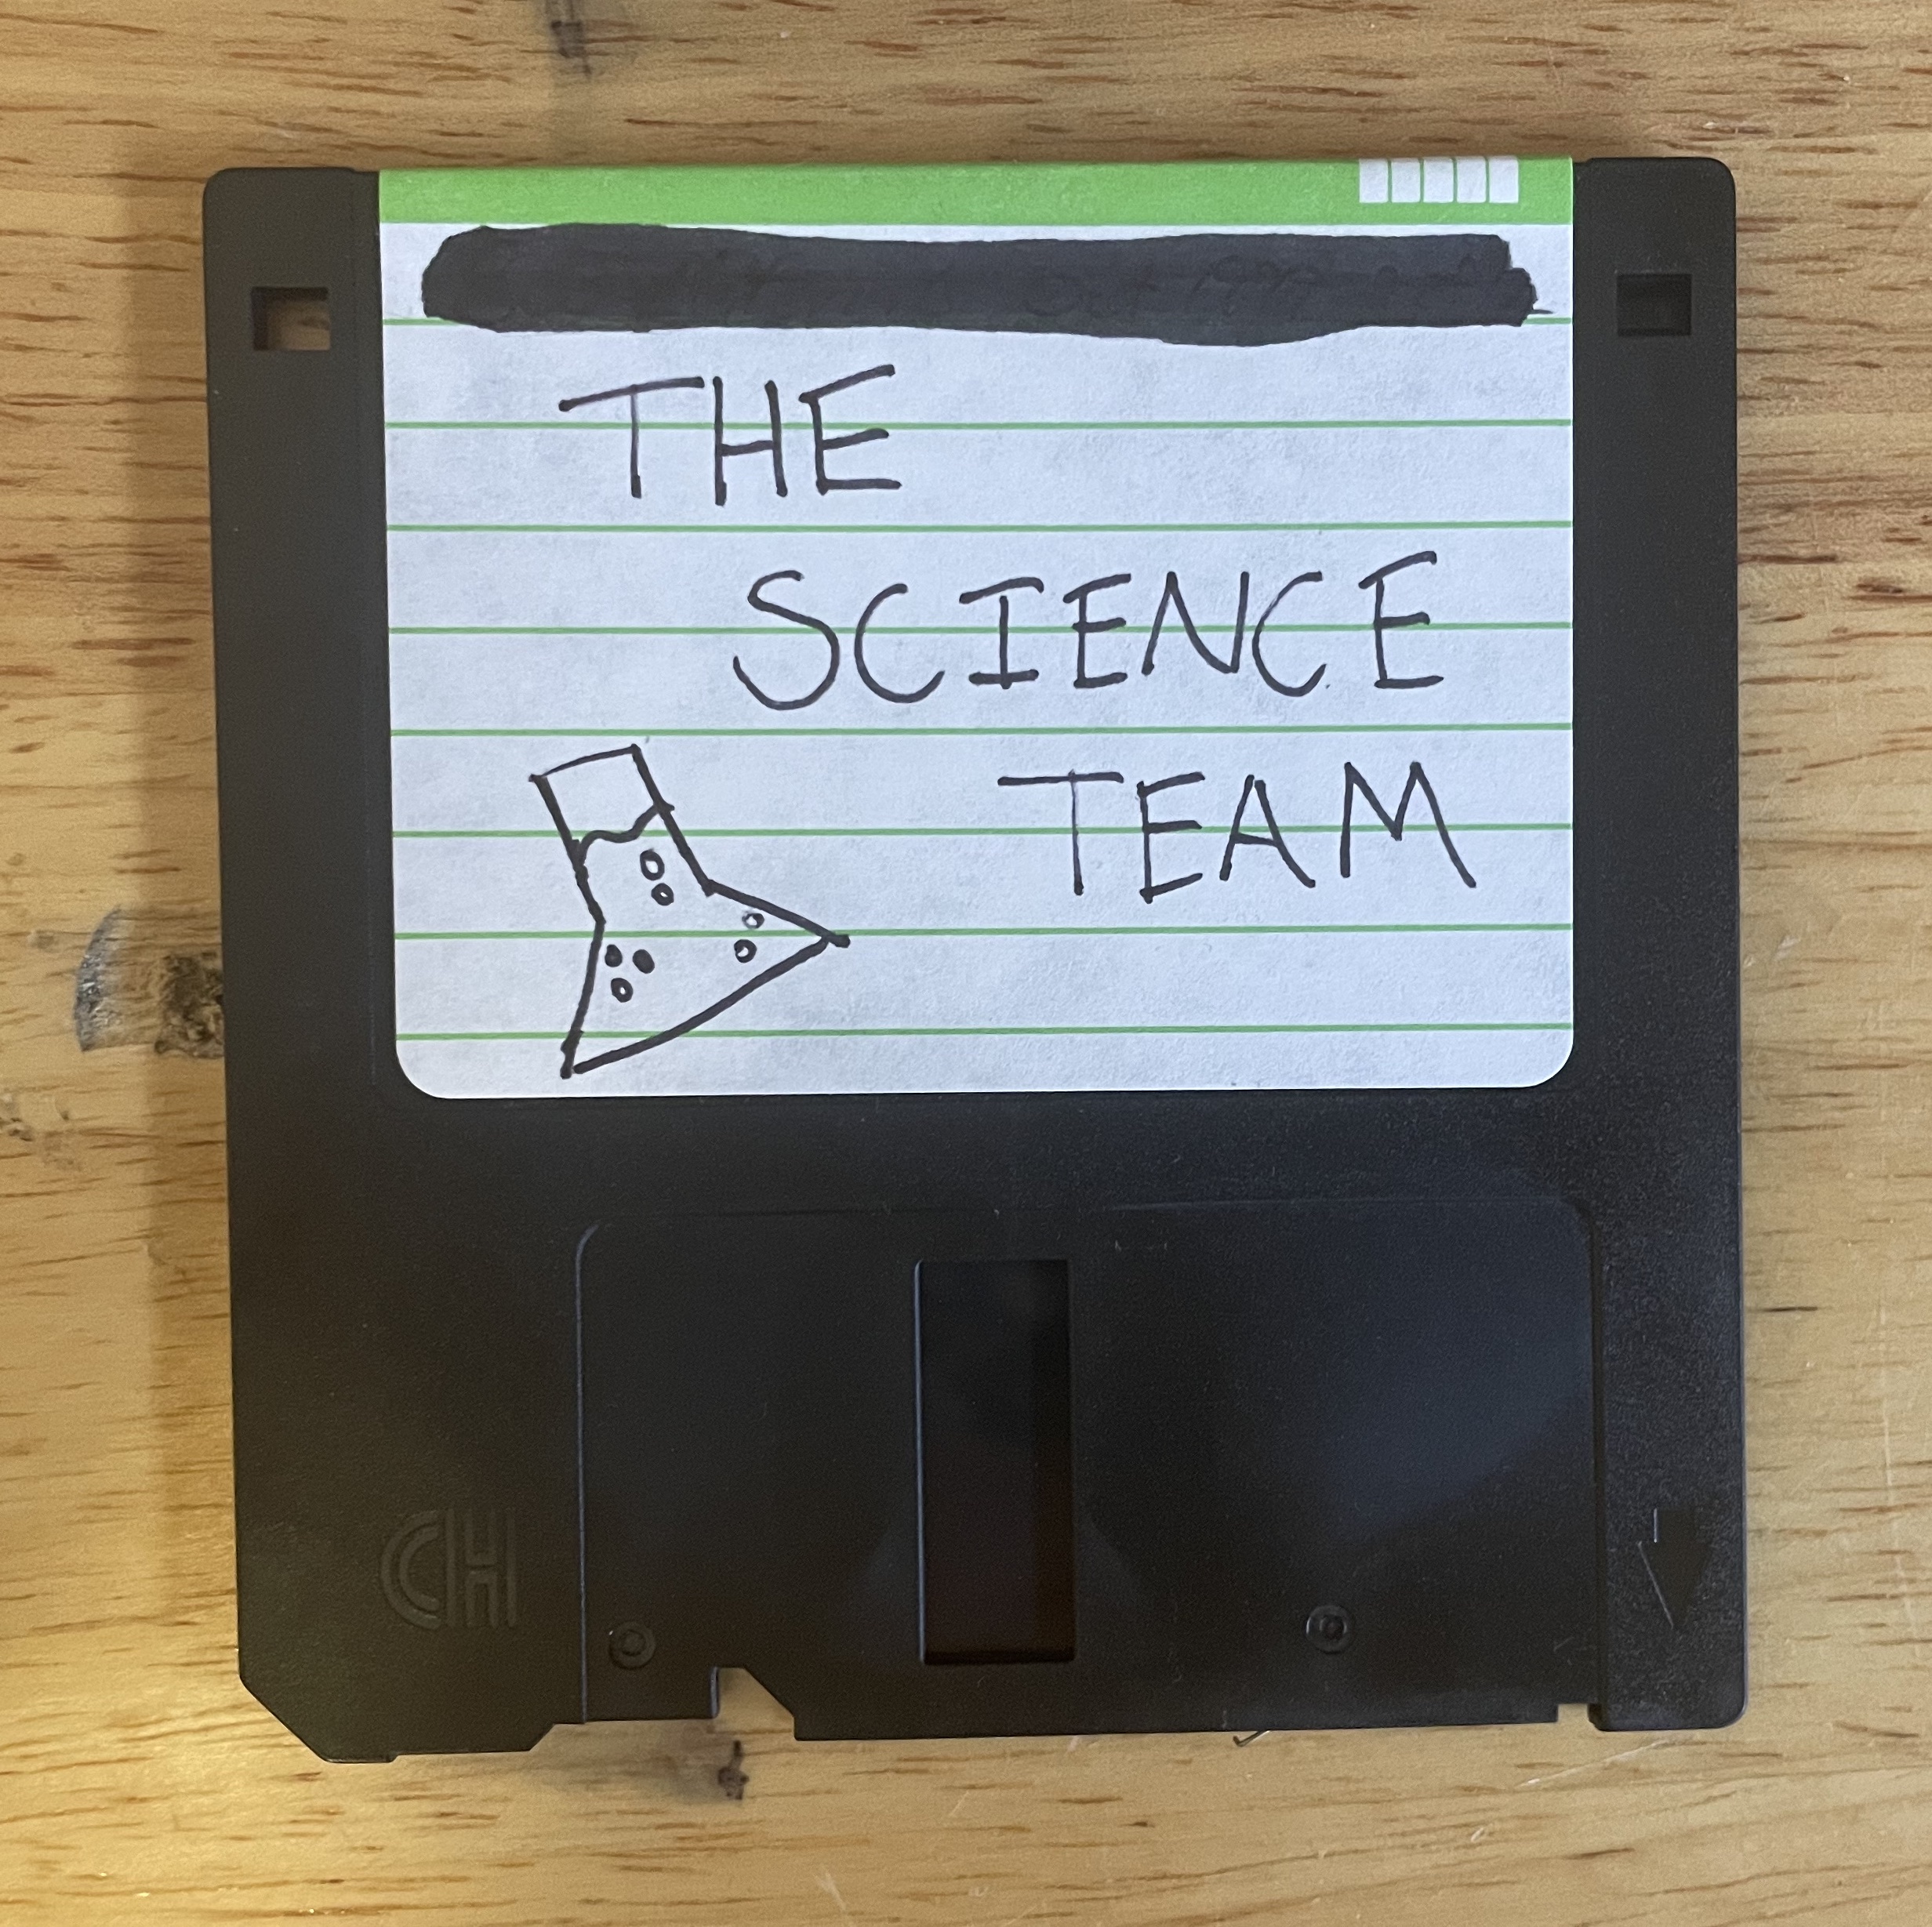 The Floppy Disk